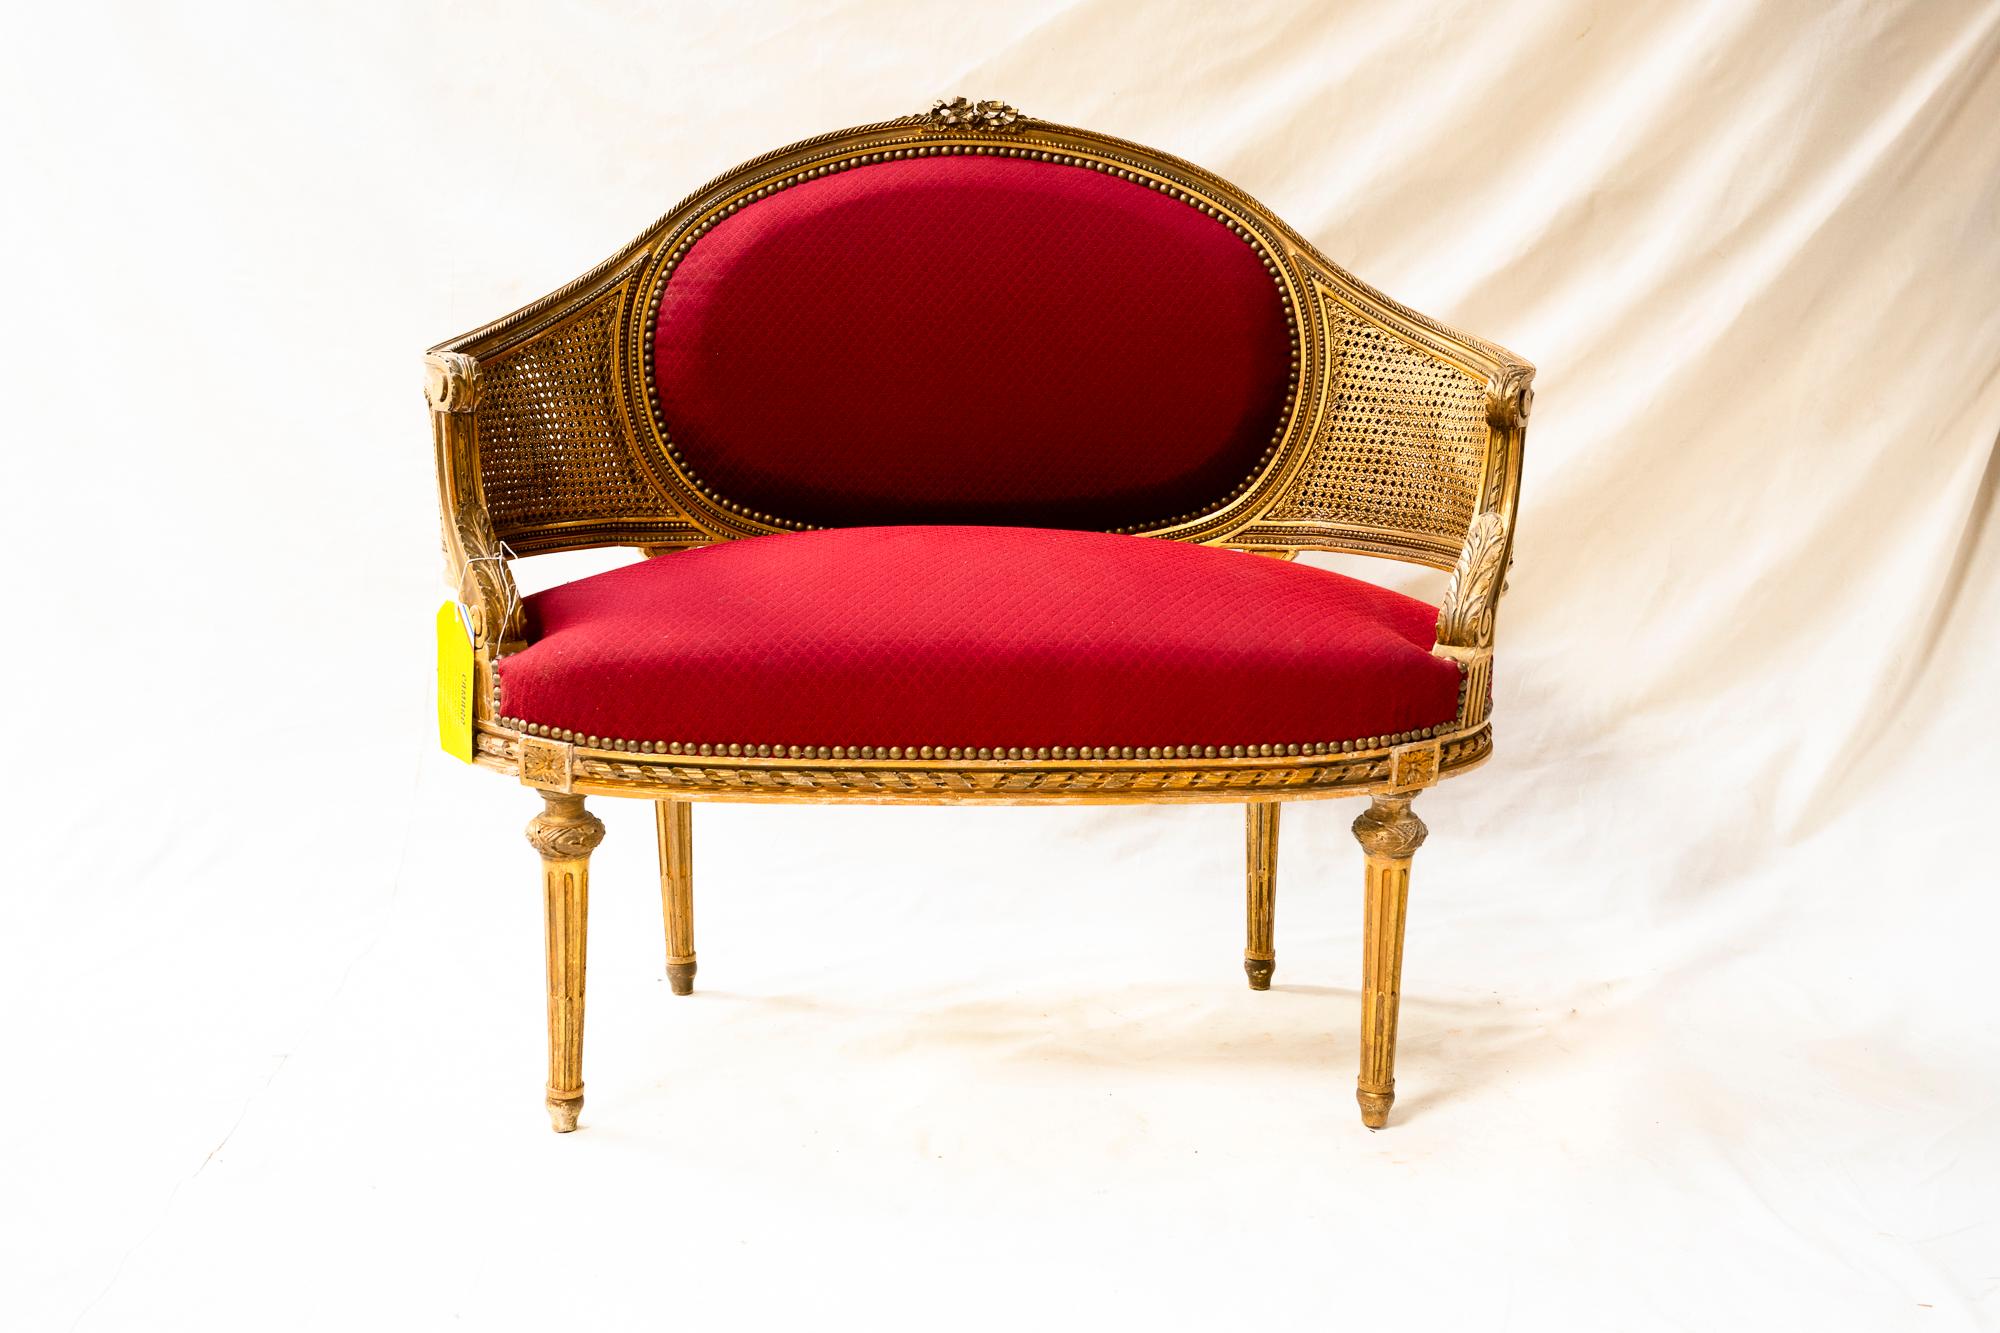 Ce joli canapé en bois doré et en giltcane à double paroi a été retapissé avec amour dans un tissu rouge vif dans le Sud-Ouest de la France, près du château où il a été découvert, et peut facilement être récupéré dans un tissu de votre choix.
 